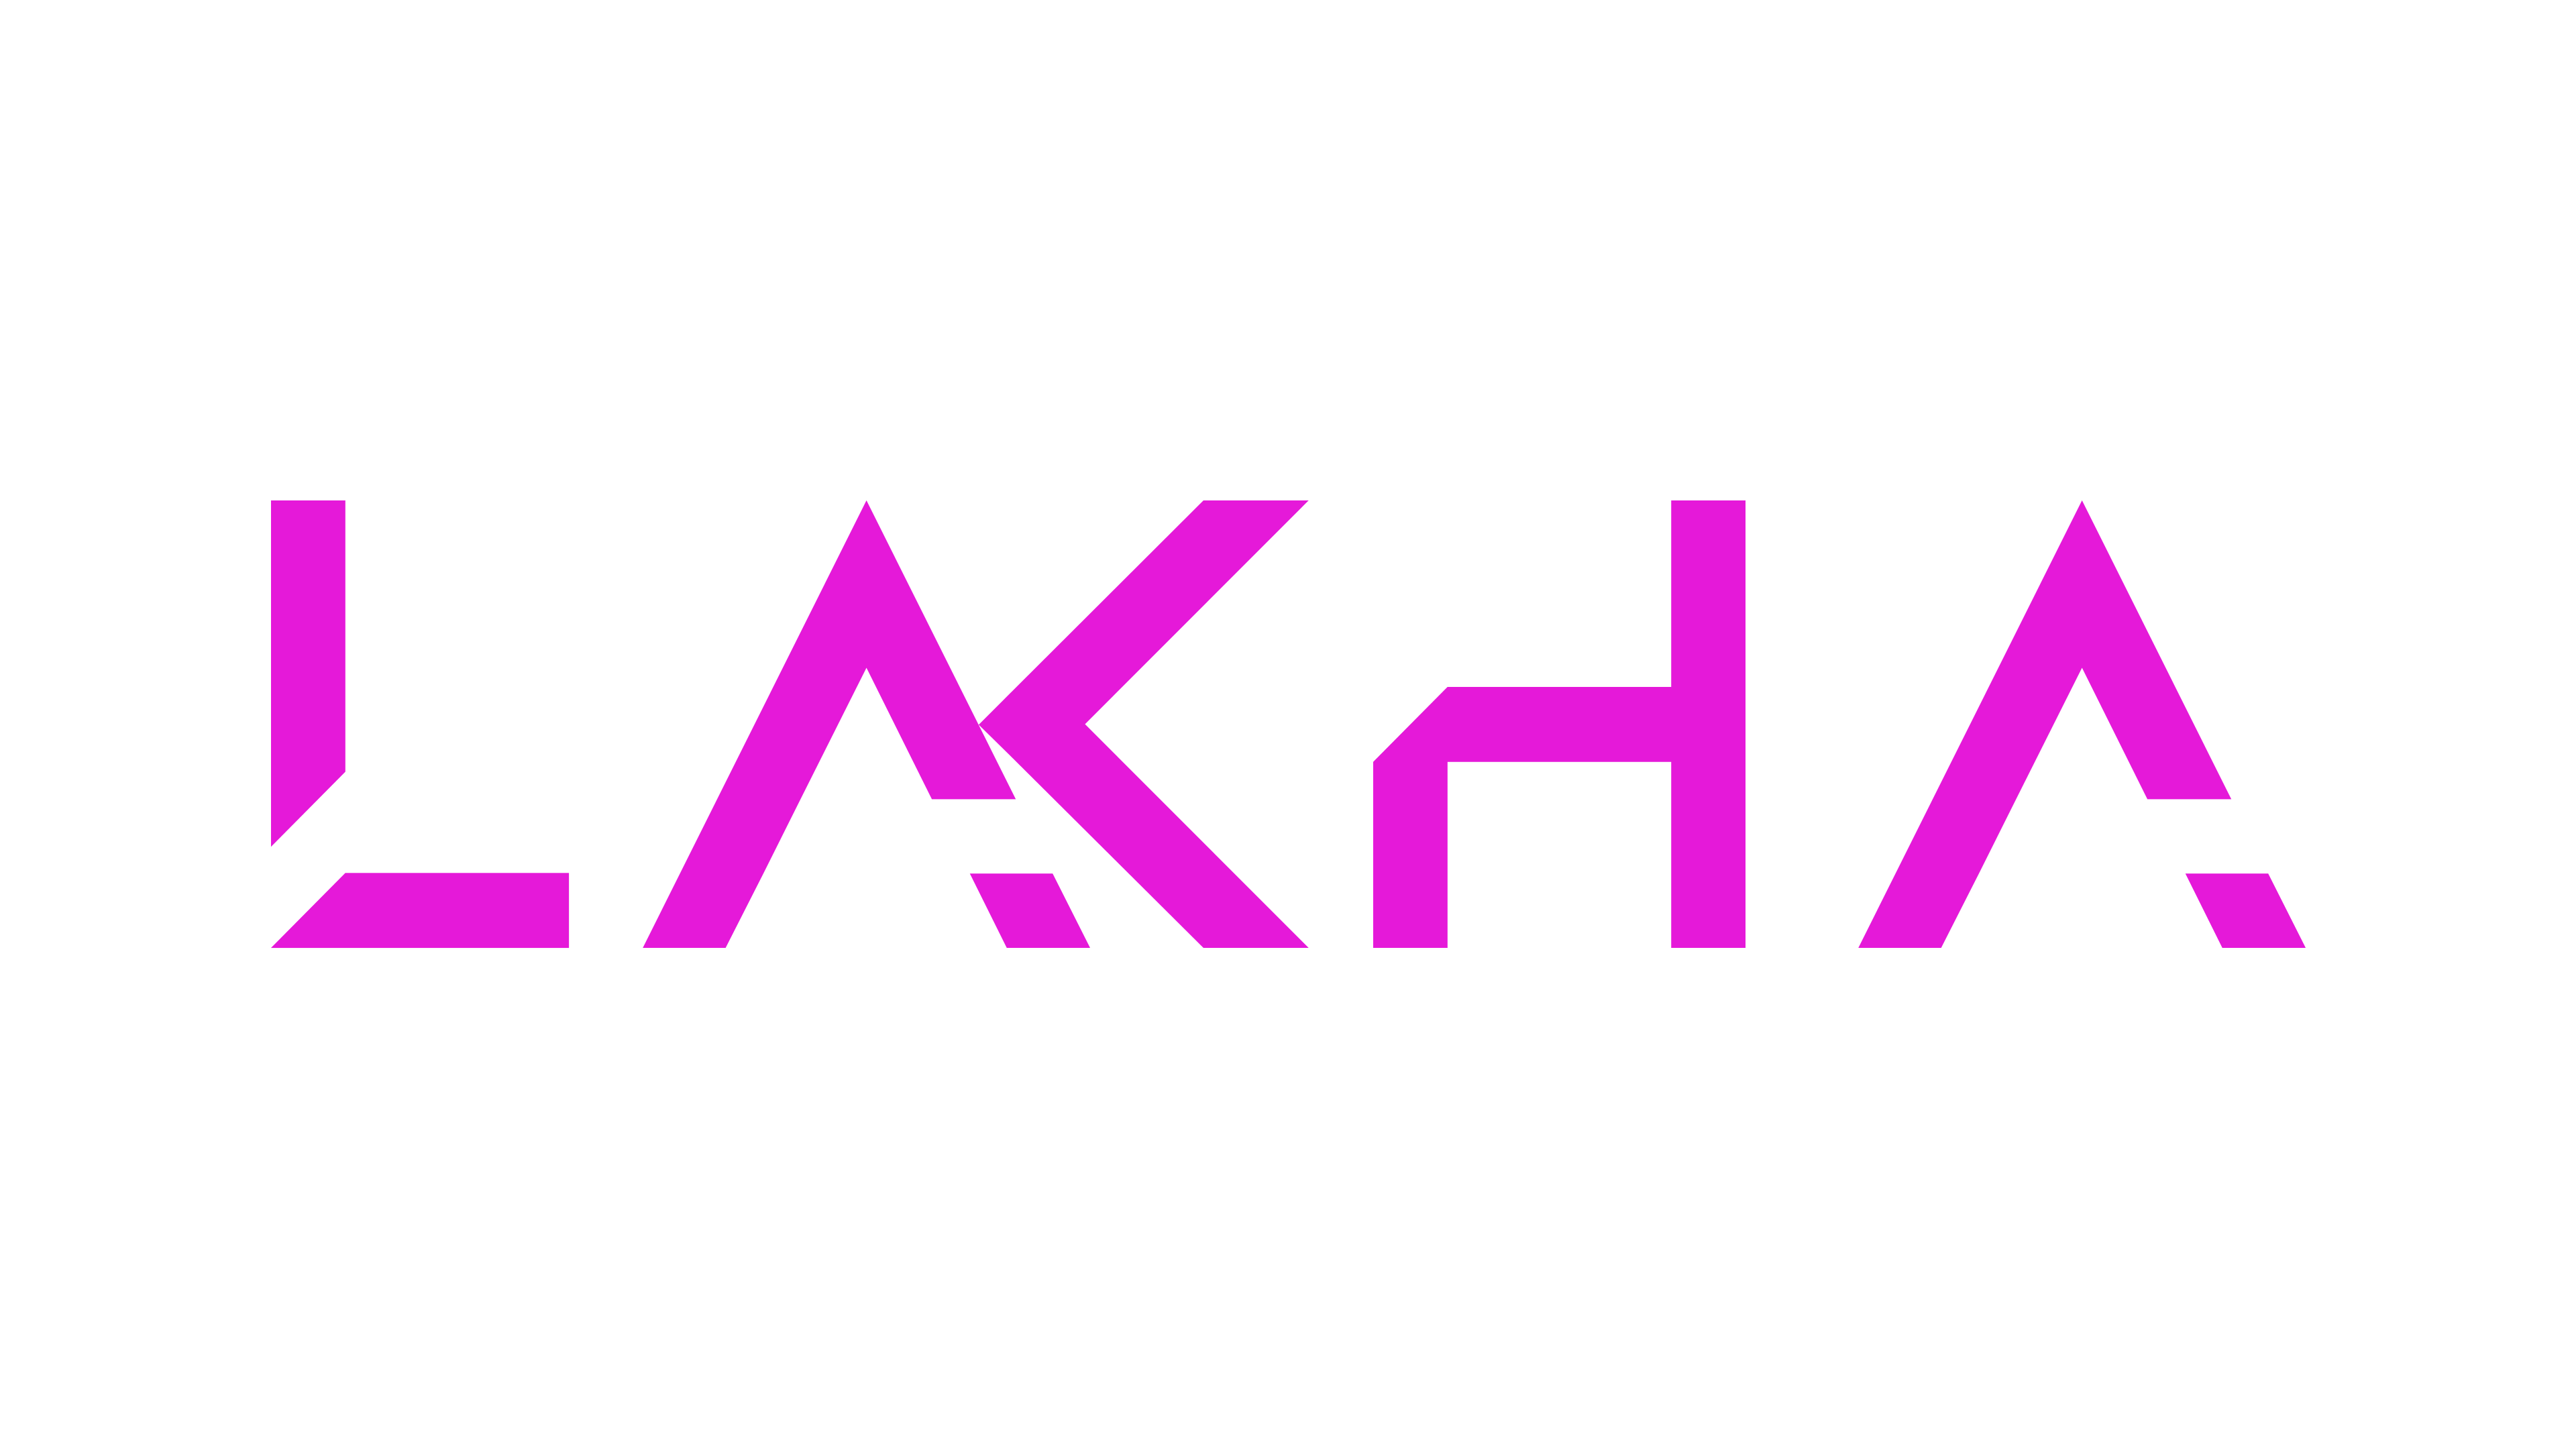 DJ Lakha